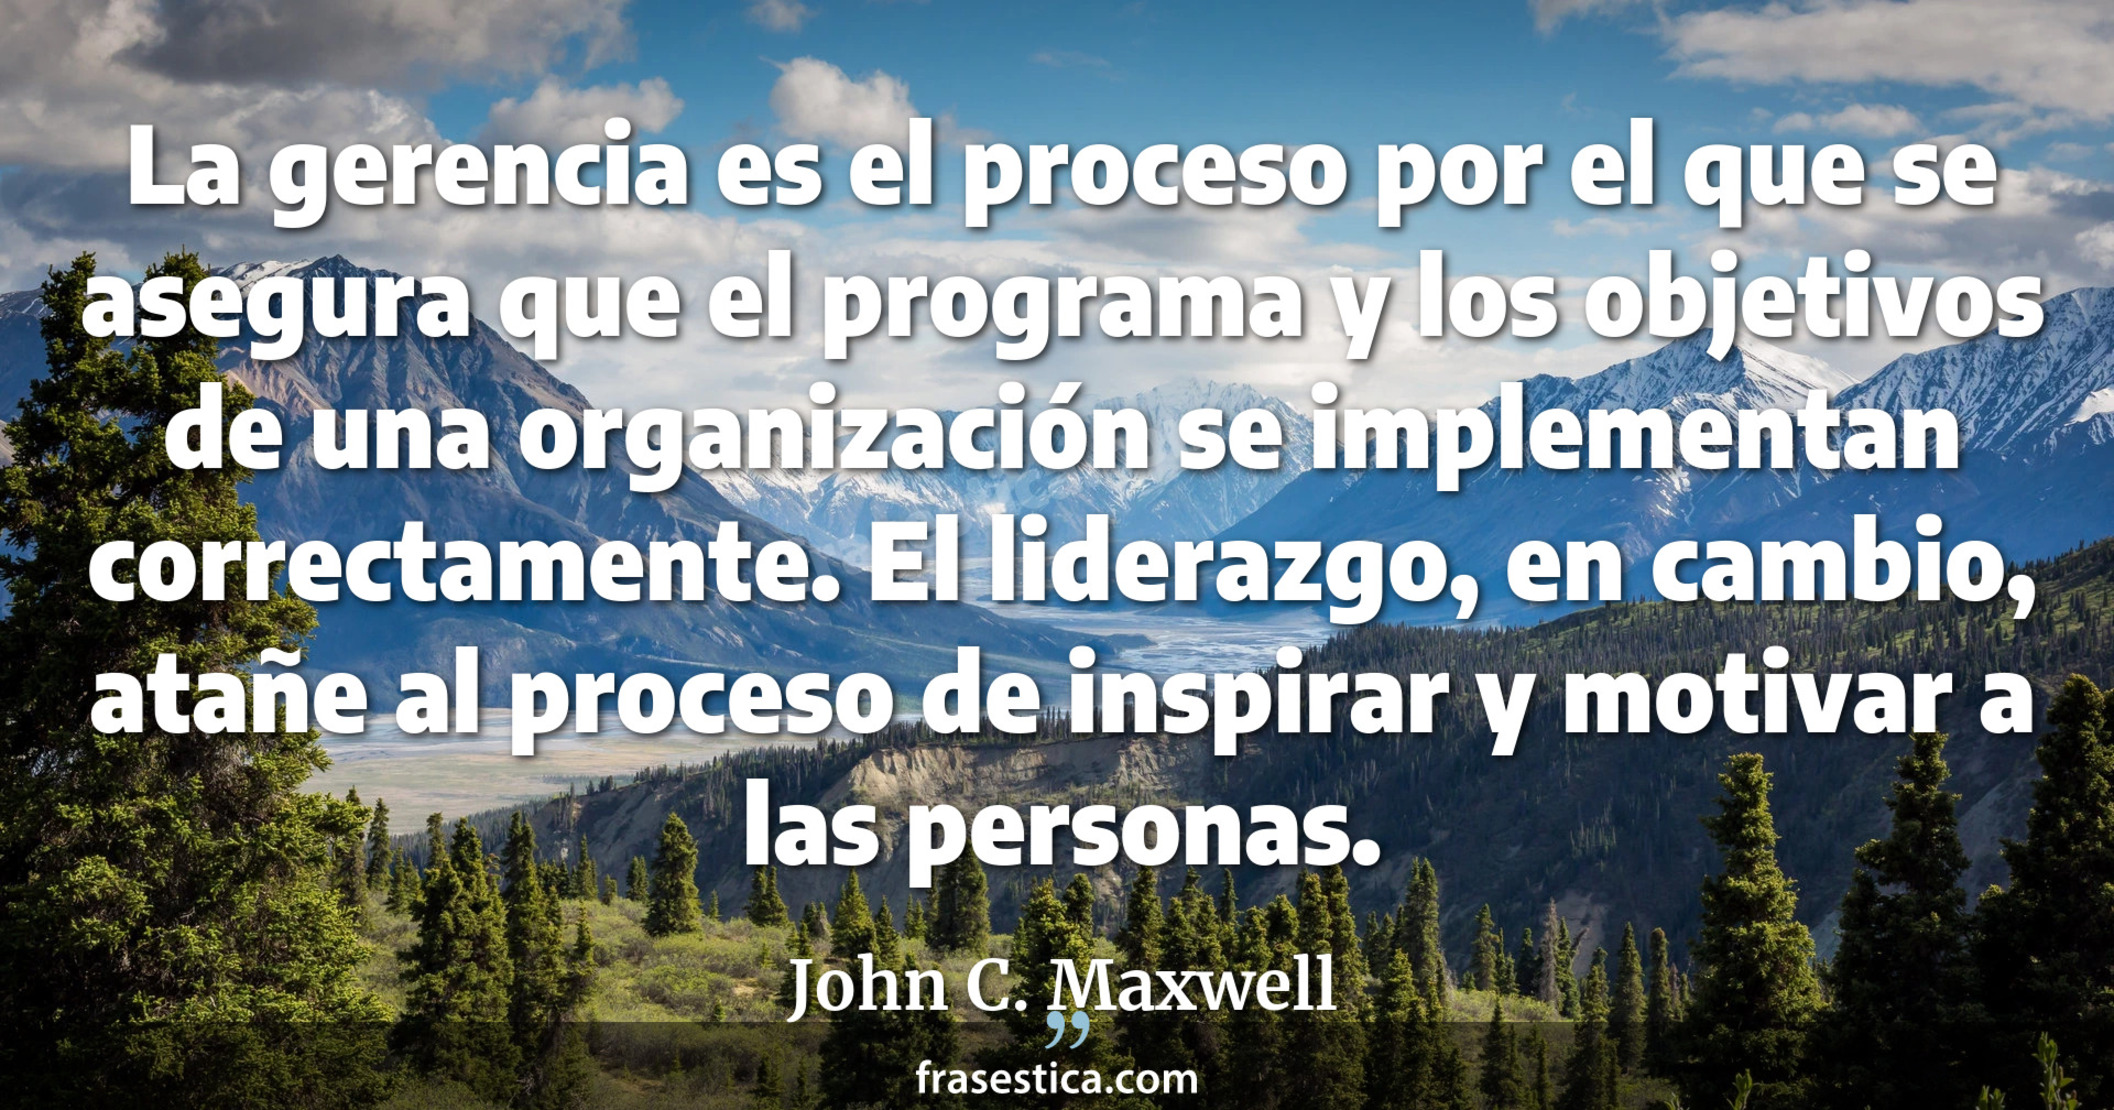 La gerencia es el proceso por el que se asegura que el programa y los objetivos de una organización se implementan correctamente. El liderazgo, en cambio, atañe al proceso de inspirar y motivar a las personas. - John C. Maxwell